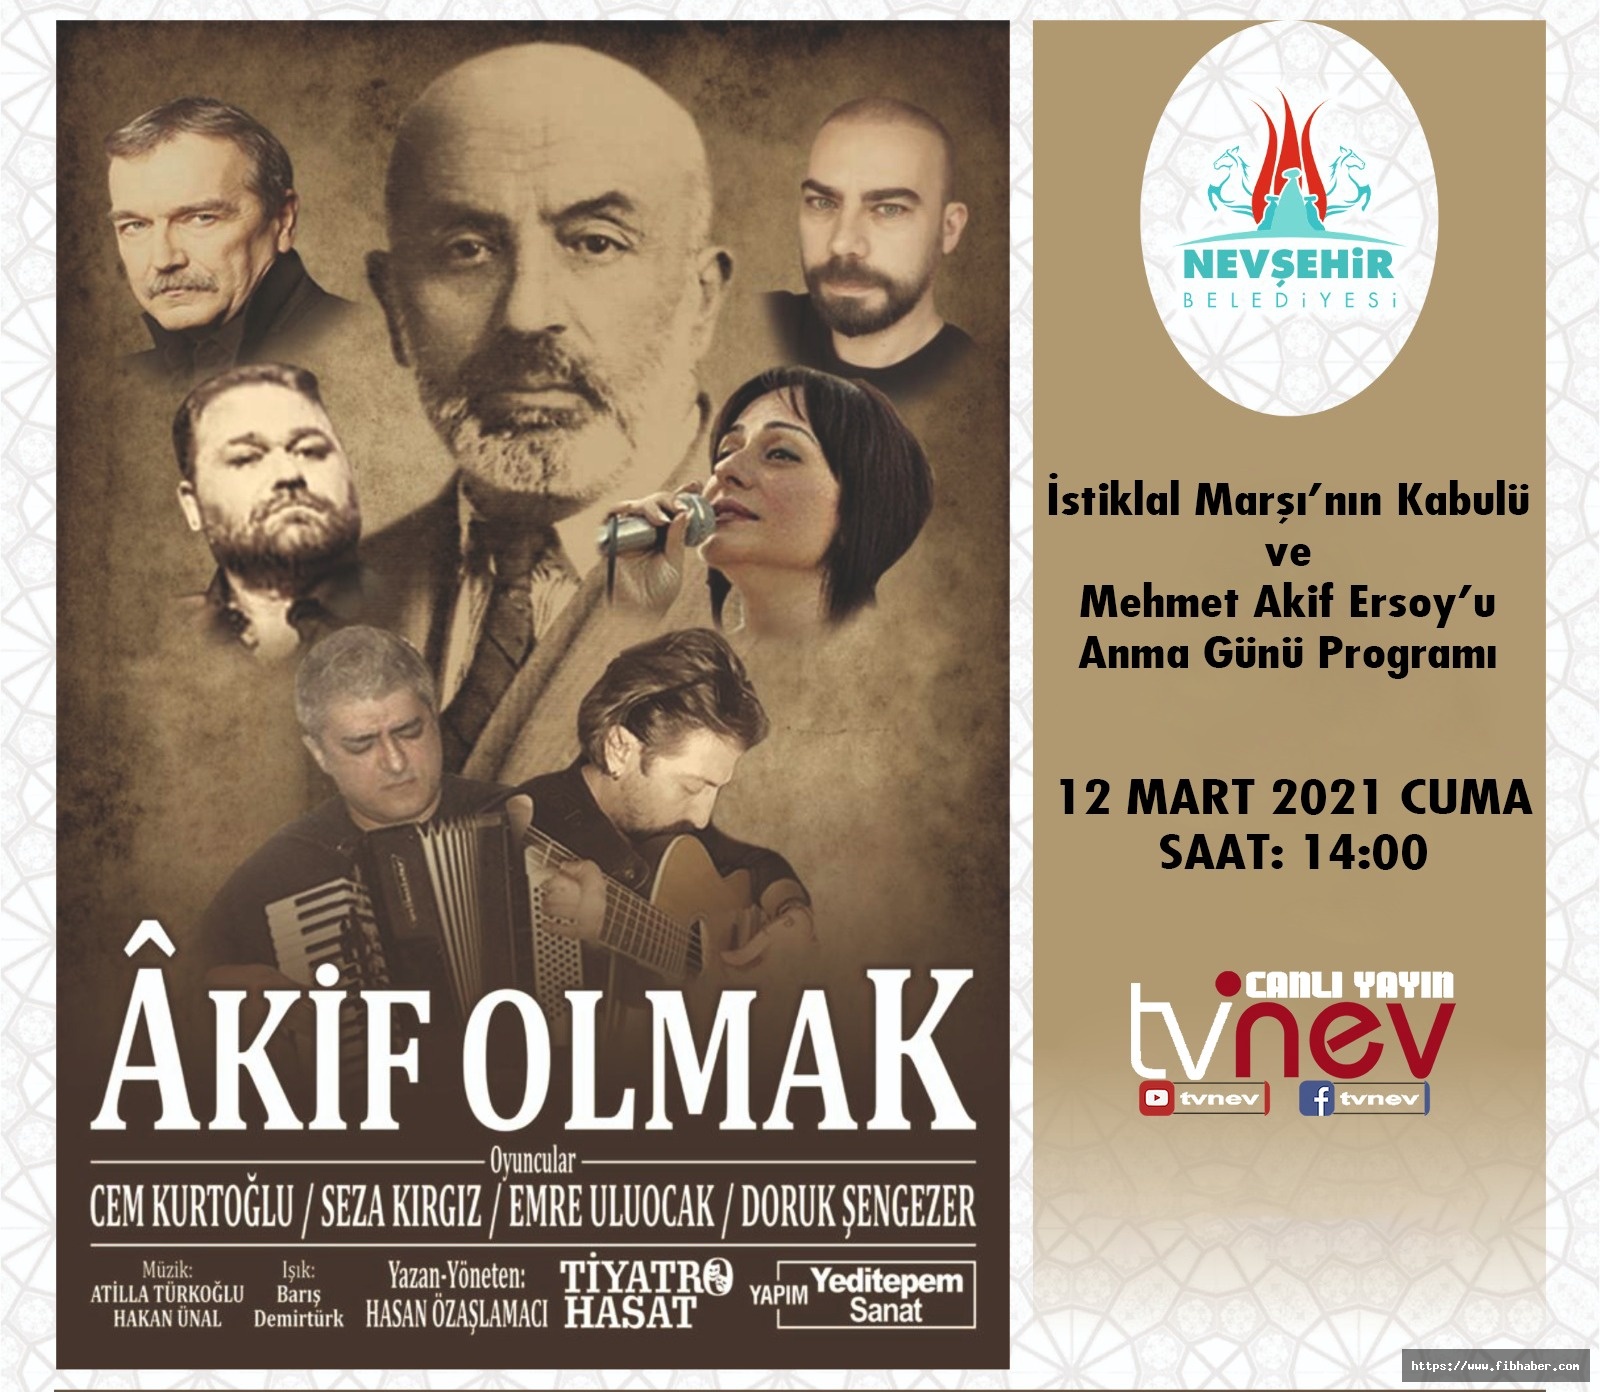 Nevşehir’de “Akif Olmak” adlı tiyatro oyunu sahnelenecek